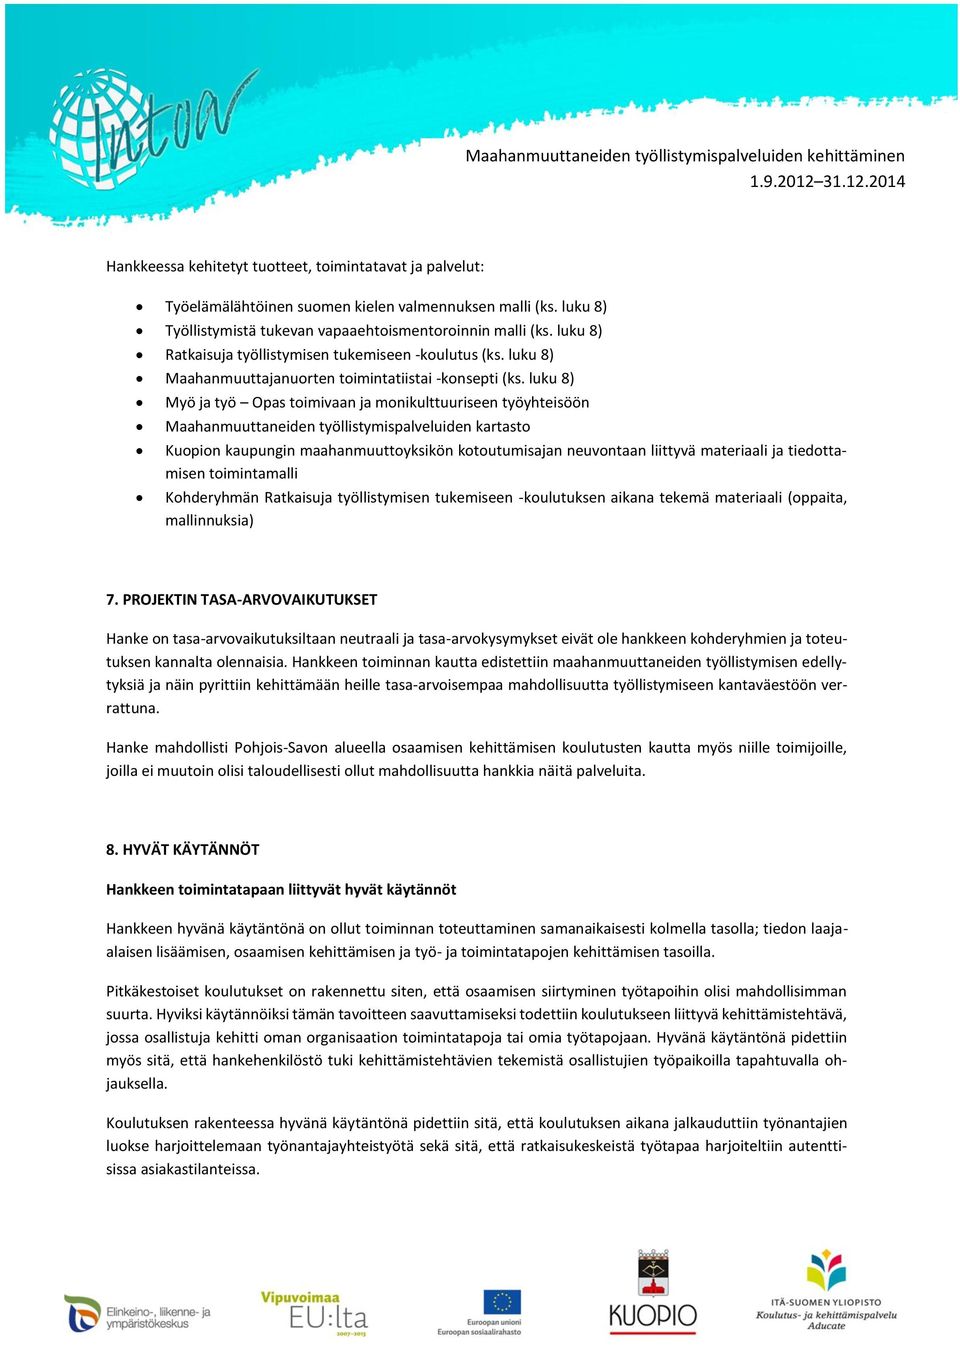 luku 8) Myö ja työ Opas toimivaan ja monikulttuuriseen työyhteisöön Maahanmuuttaneiden työllistymispalveluiden kartasto Kuopion kaupungin maahanmuuttoyksikön kotoutumisajan neuvontaan liittyvä